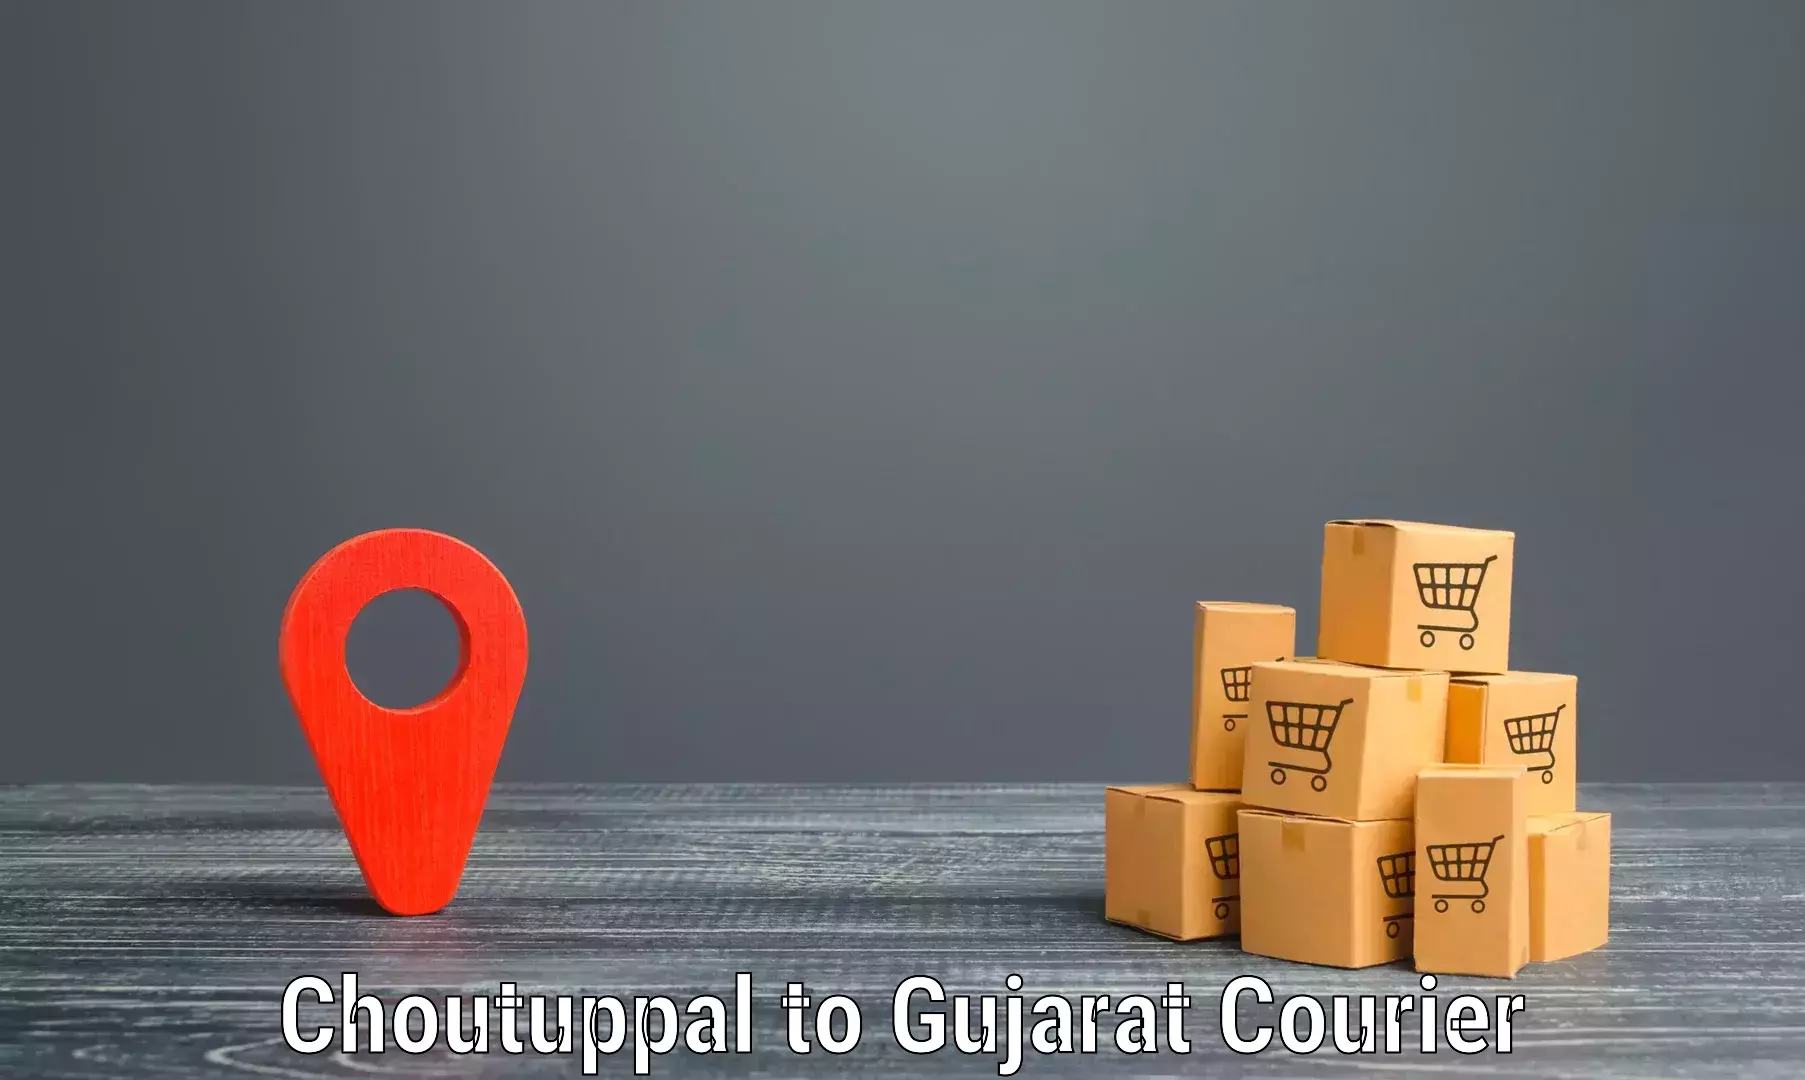 Reliable logistics providers Choutuppal to Kadana